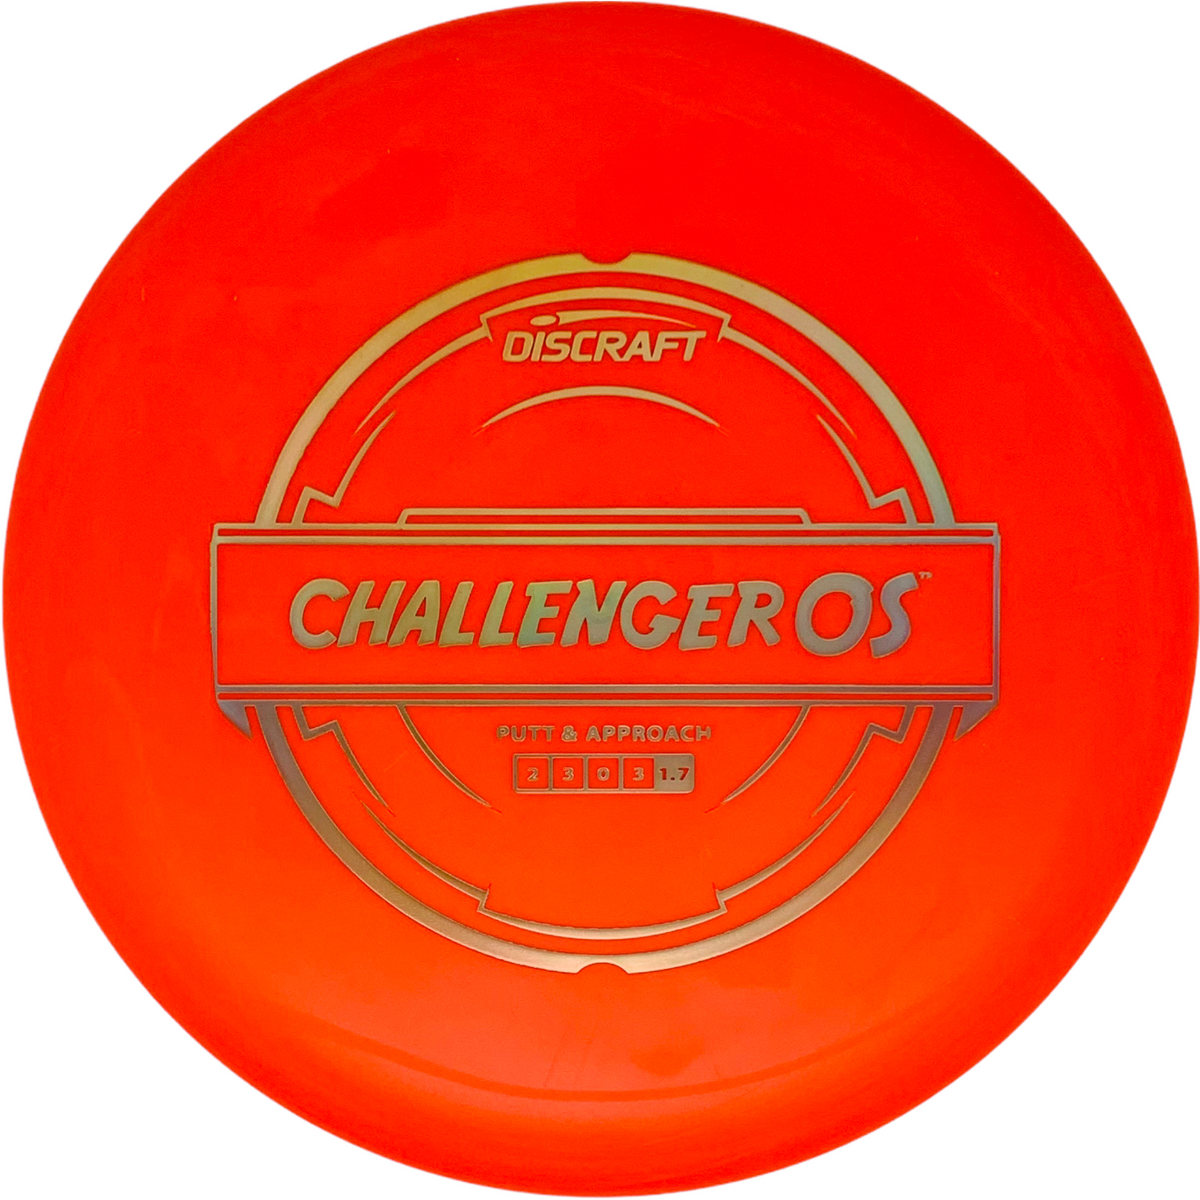 Discraft Putter Line Challenger OS